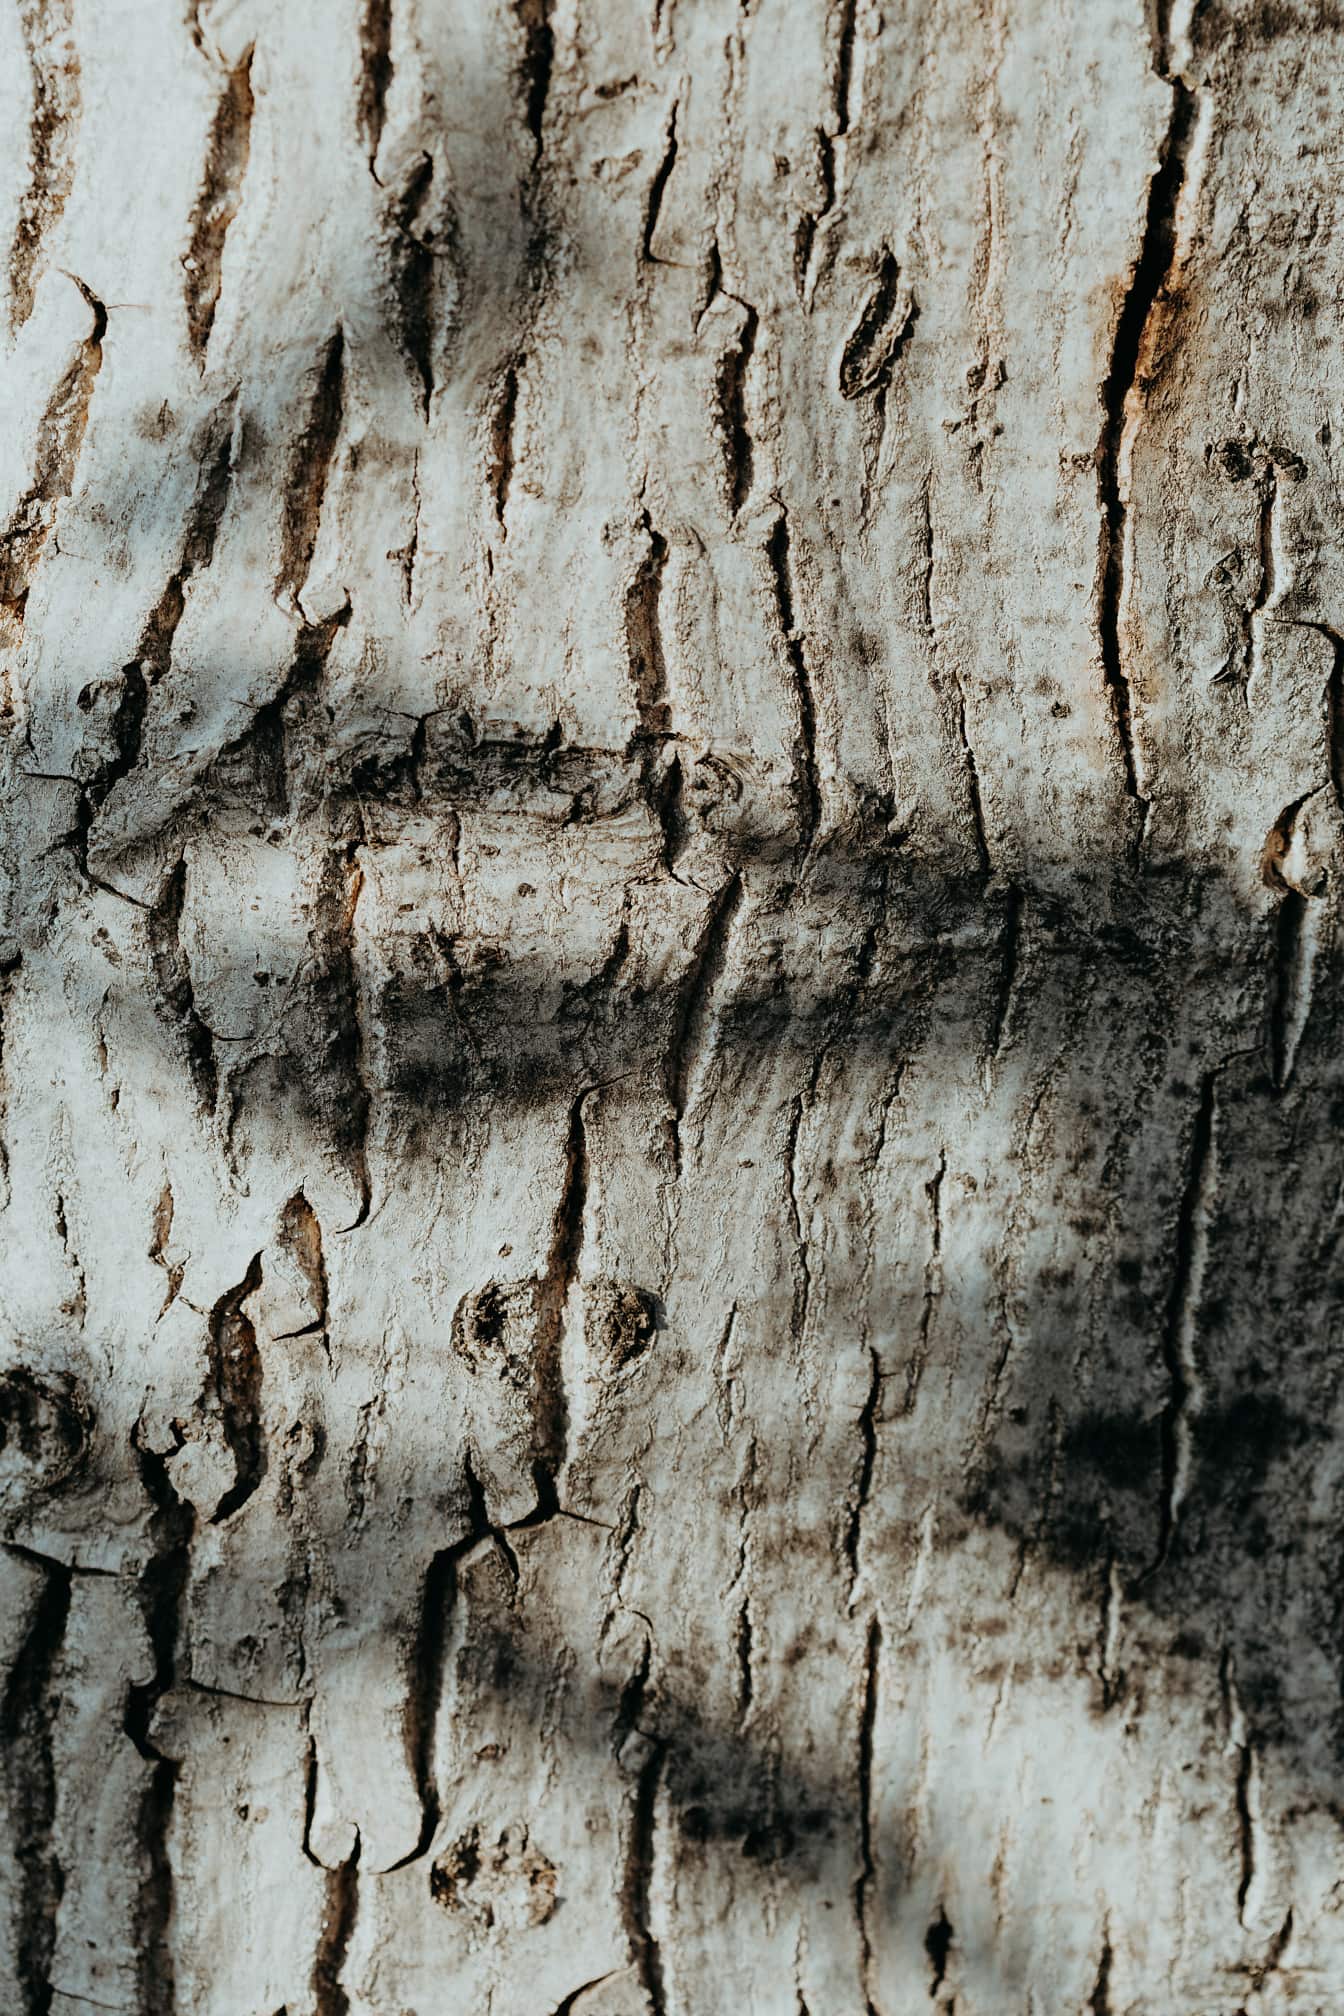 Korteks batang pohon poplar dengan tekstur close-up bayangan